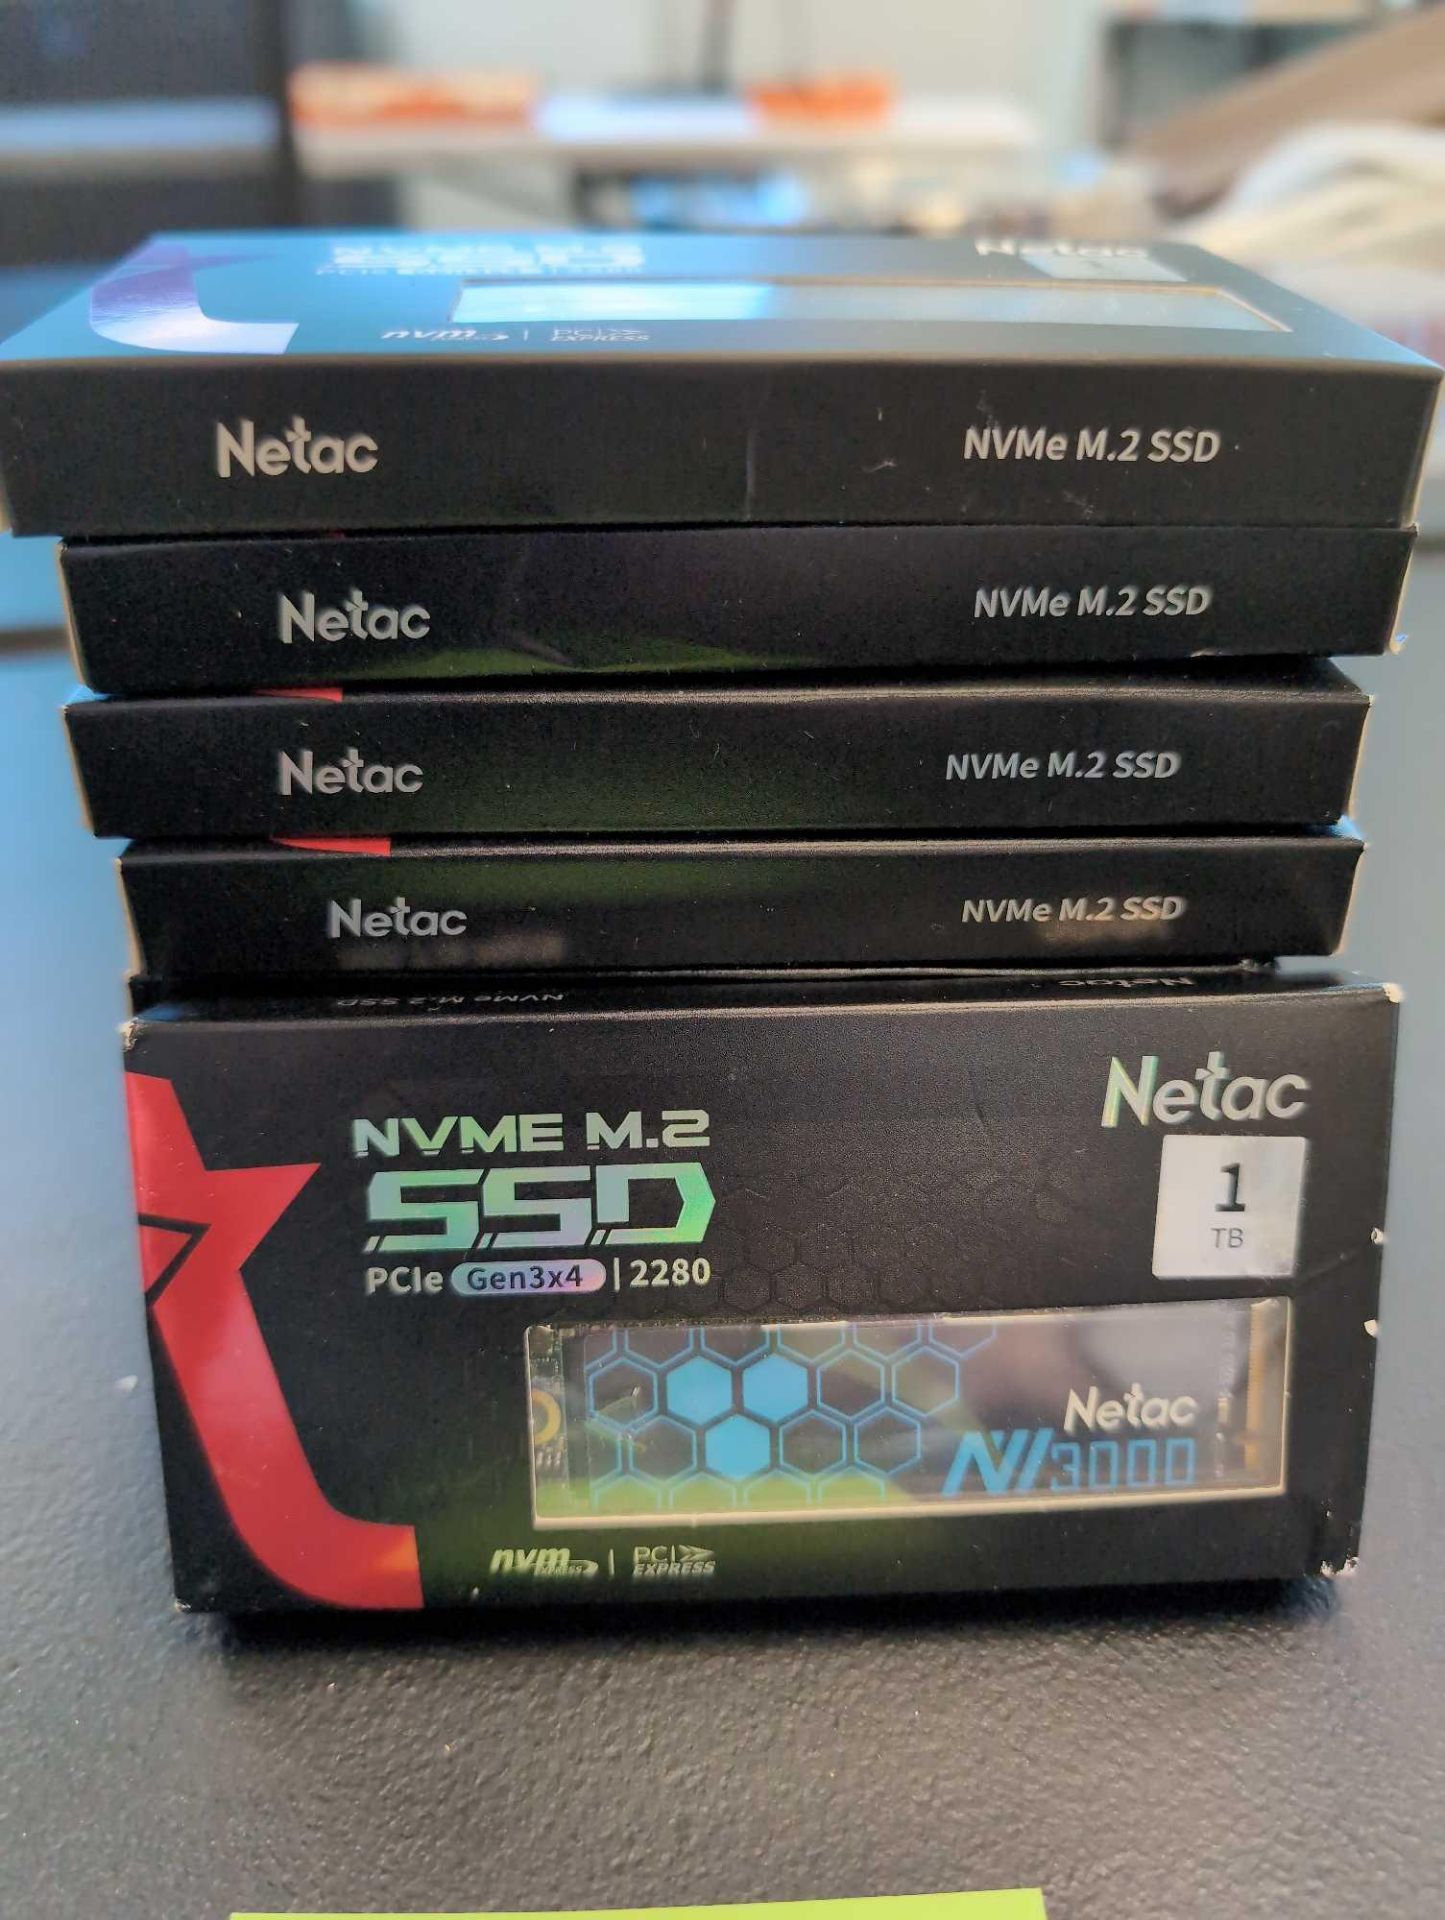 9- Netac 1 TB NVME M.2 SSD Gen 3x4 2280